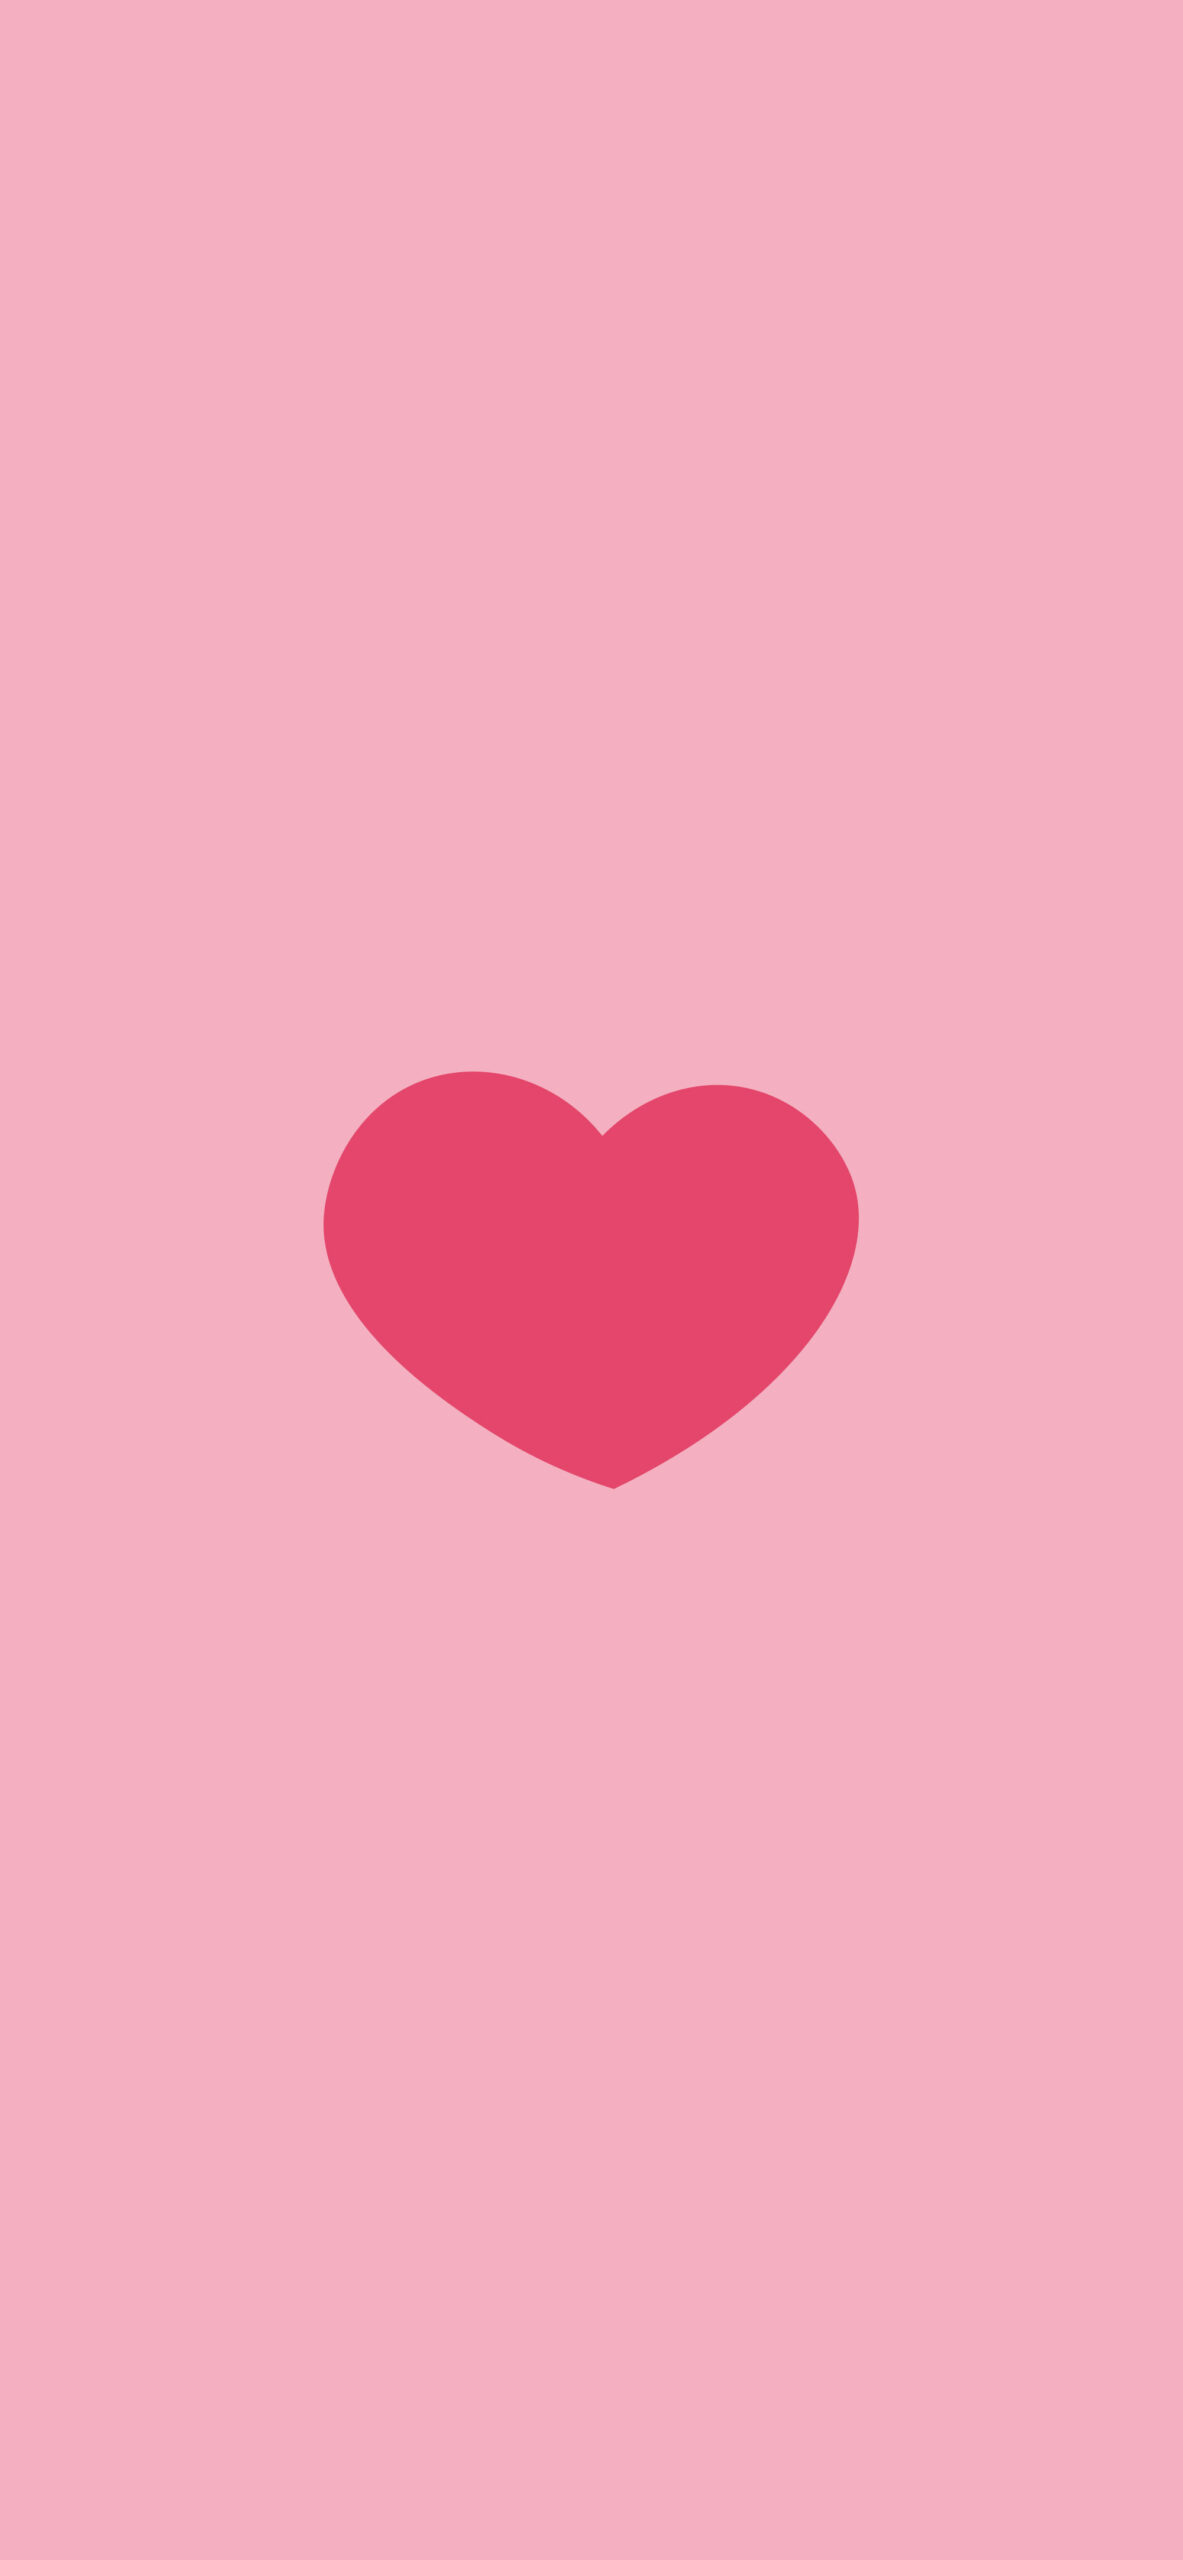 love hearts pattern pink wallpaper